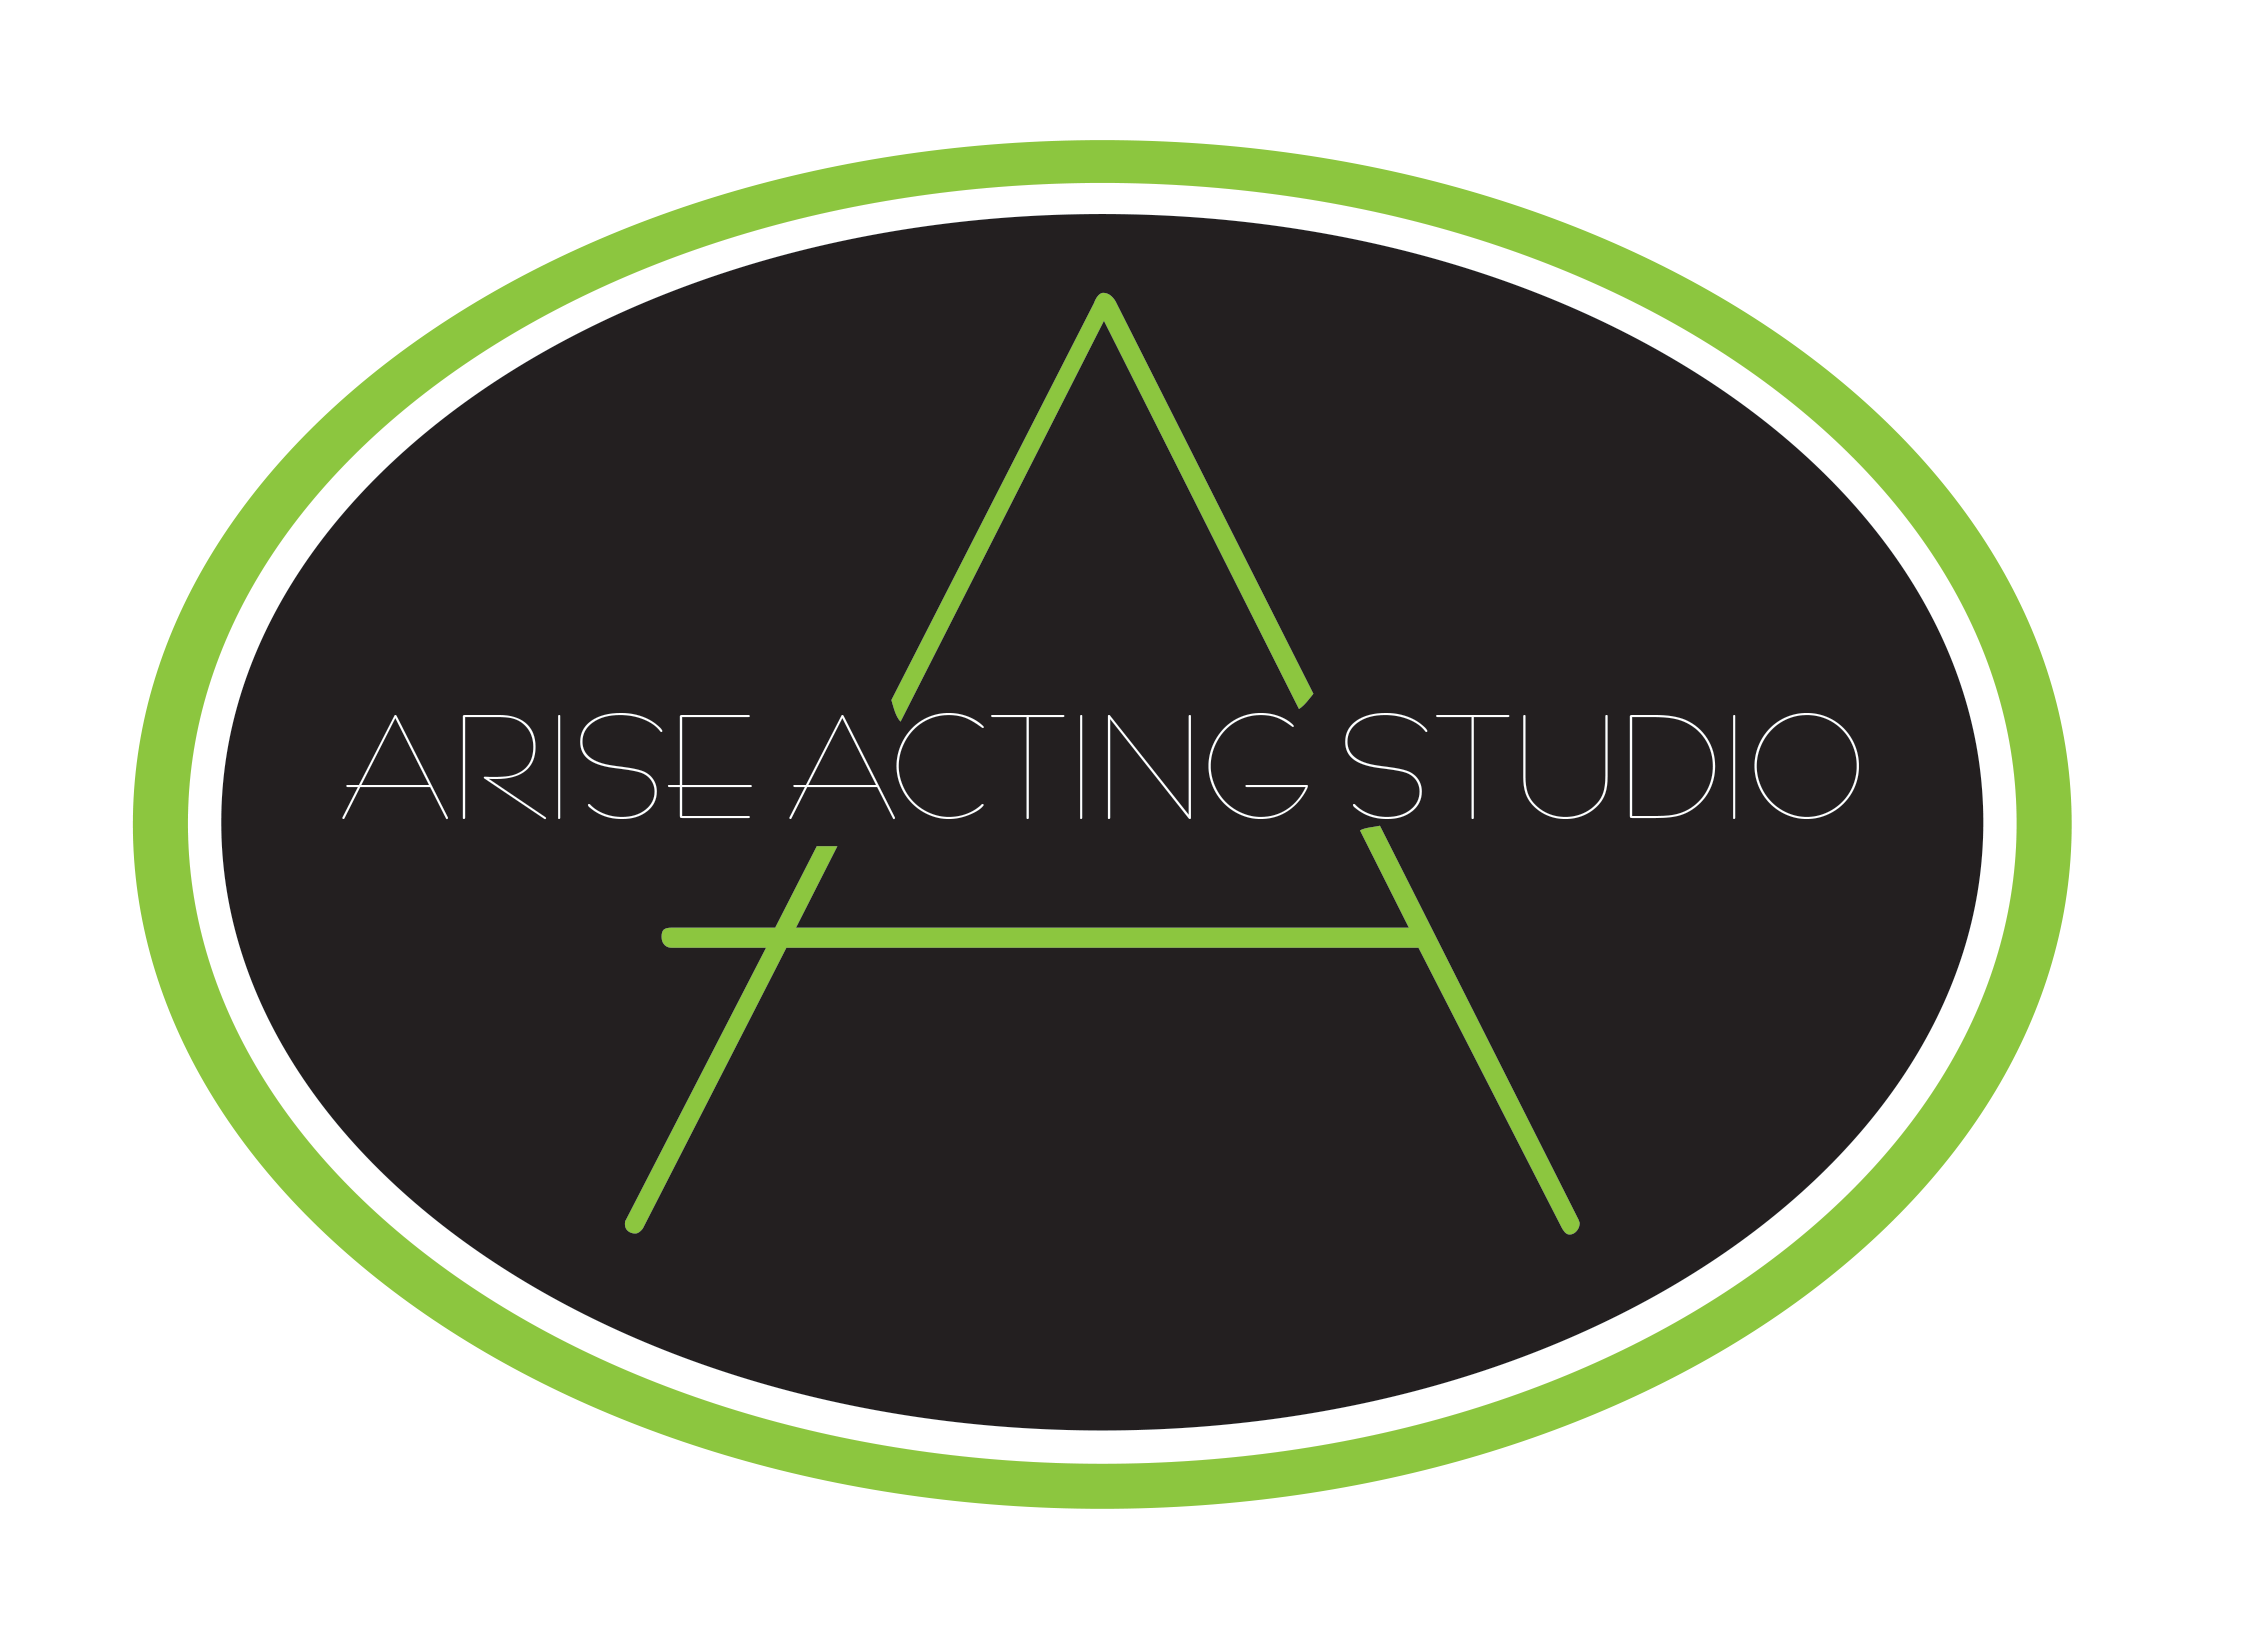 Triple Threat Program — ARISE ACTING STUDIO